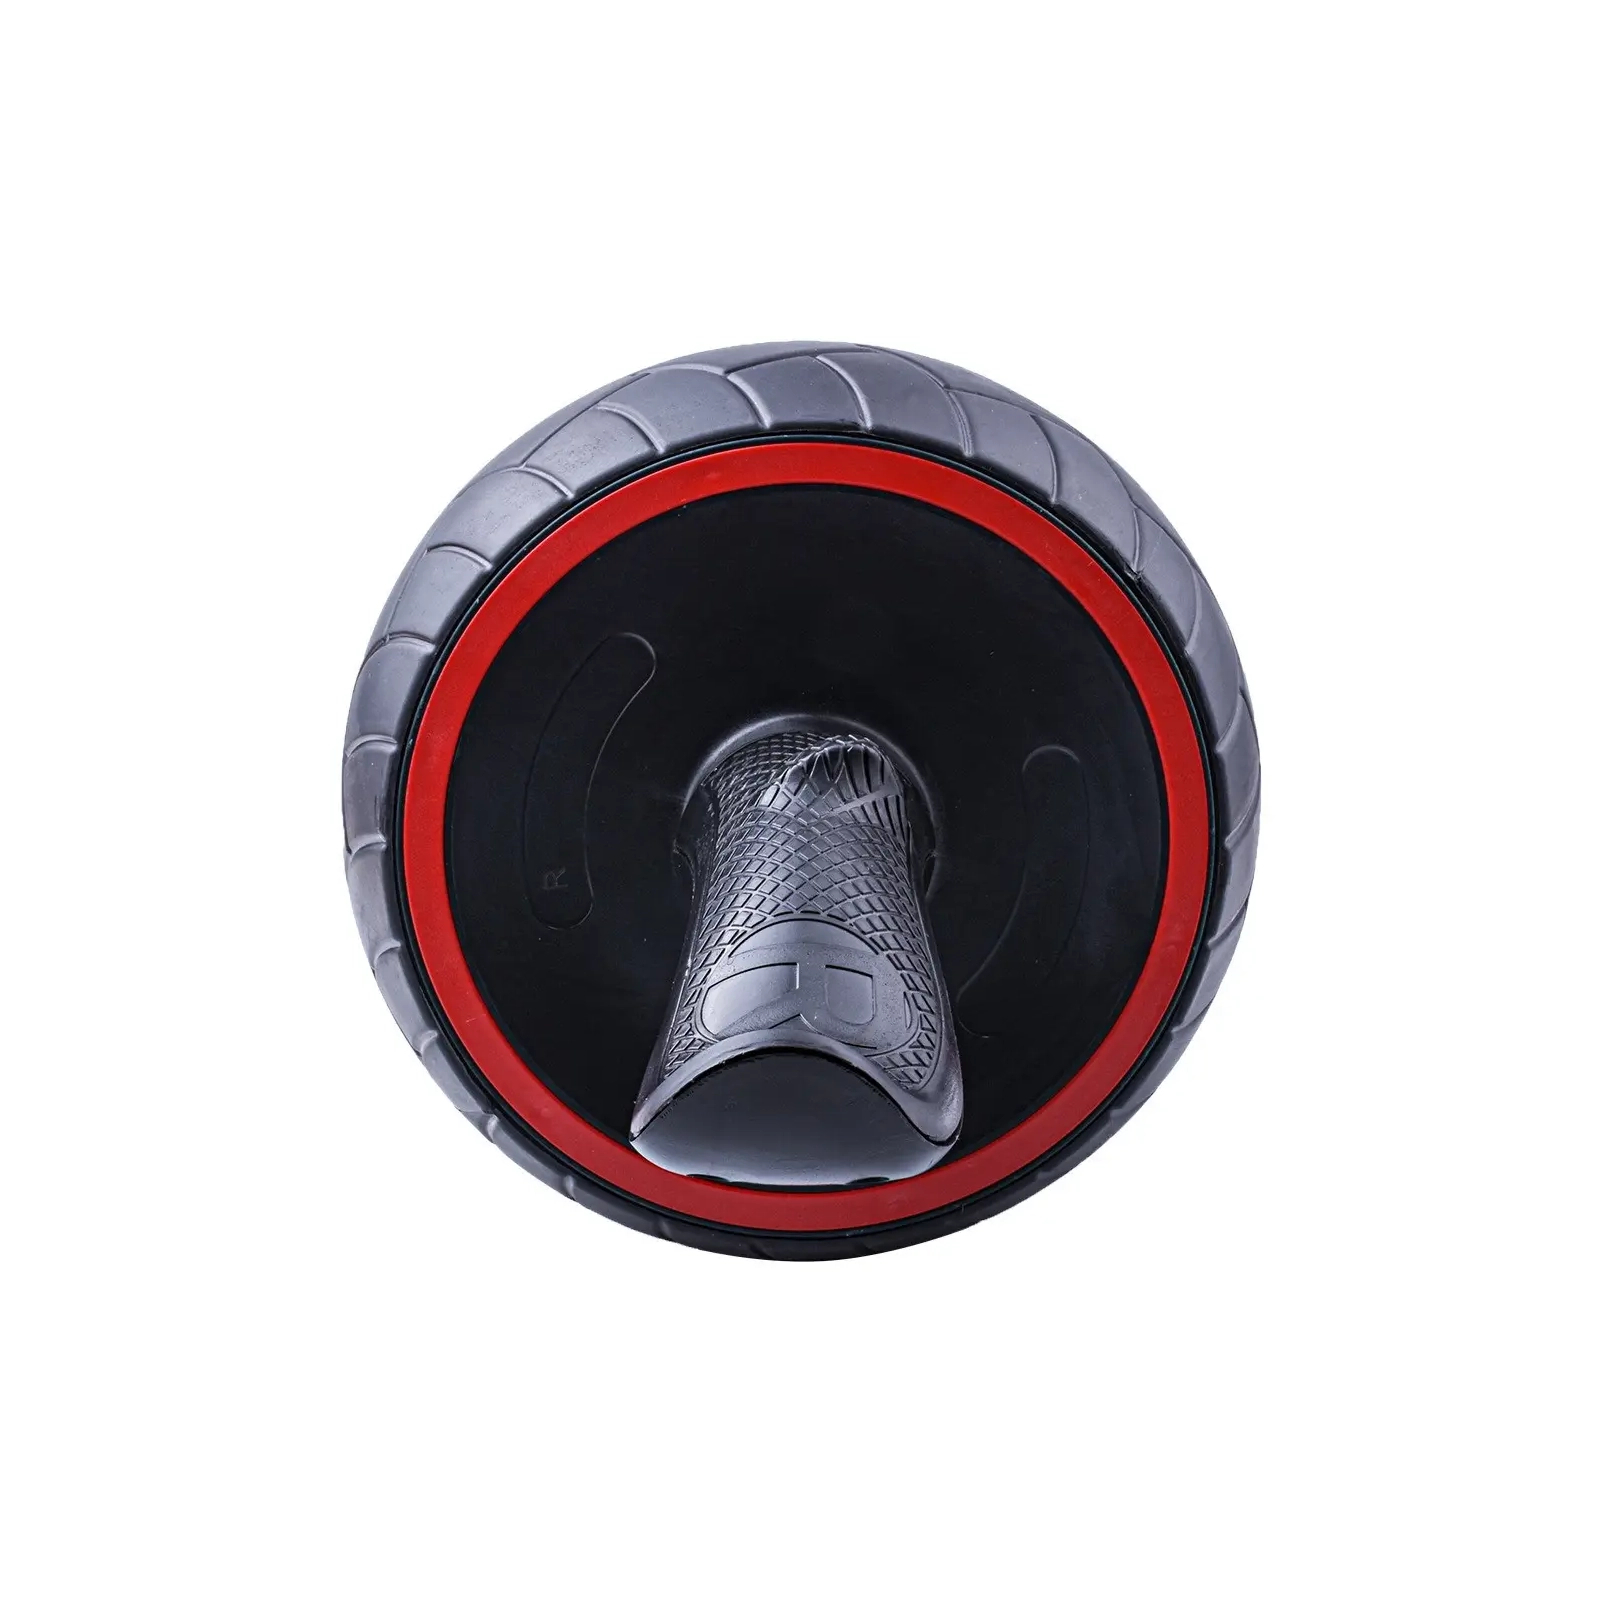 Ролик для пресса PowerPlay зі зворотним механізмом AB Wheel Pro Чорно-червоний (PP_4326_Black/Red) изображение 5